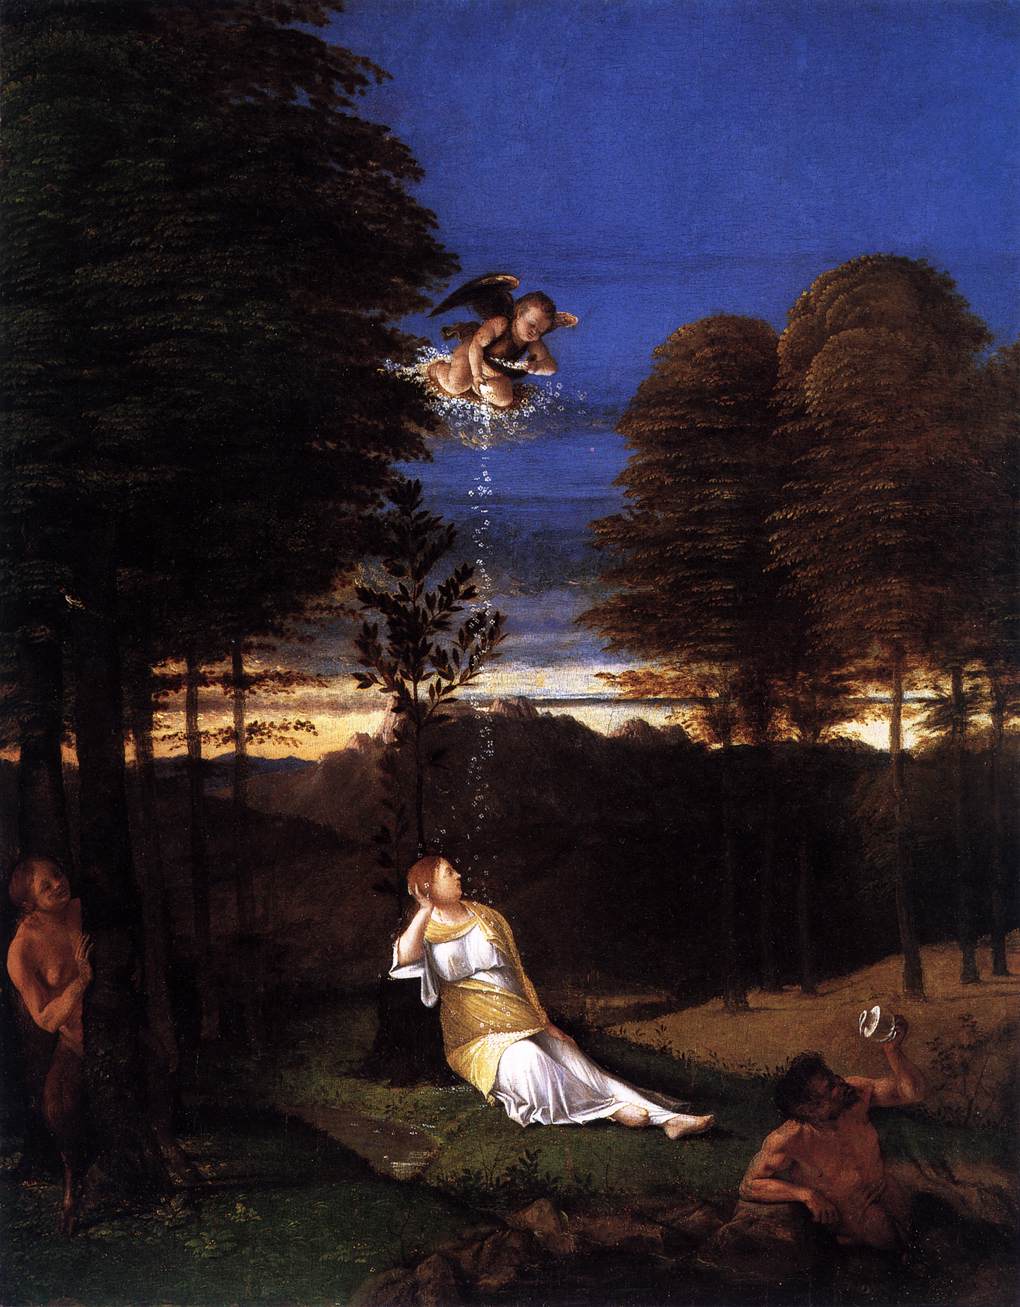 Lorenzo Lotto, détail de l'Allégorie de la Chasteté dit "Le rêve de la jeune femme", (vers 1506), Washington, National Gallery of Art (source : WGA).